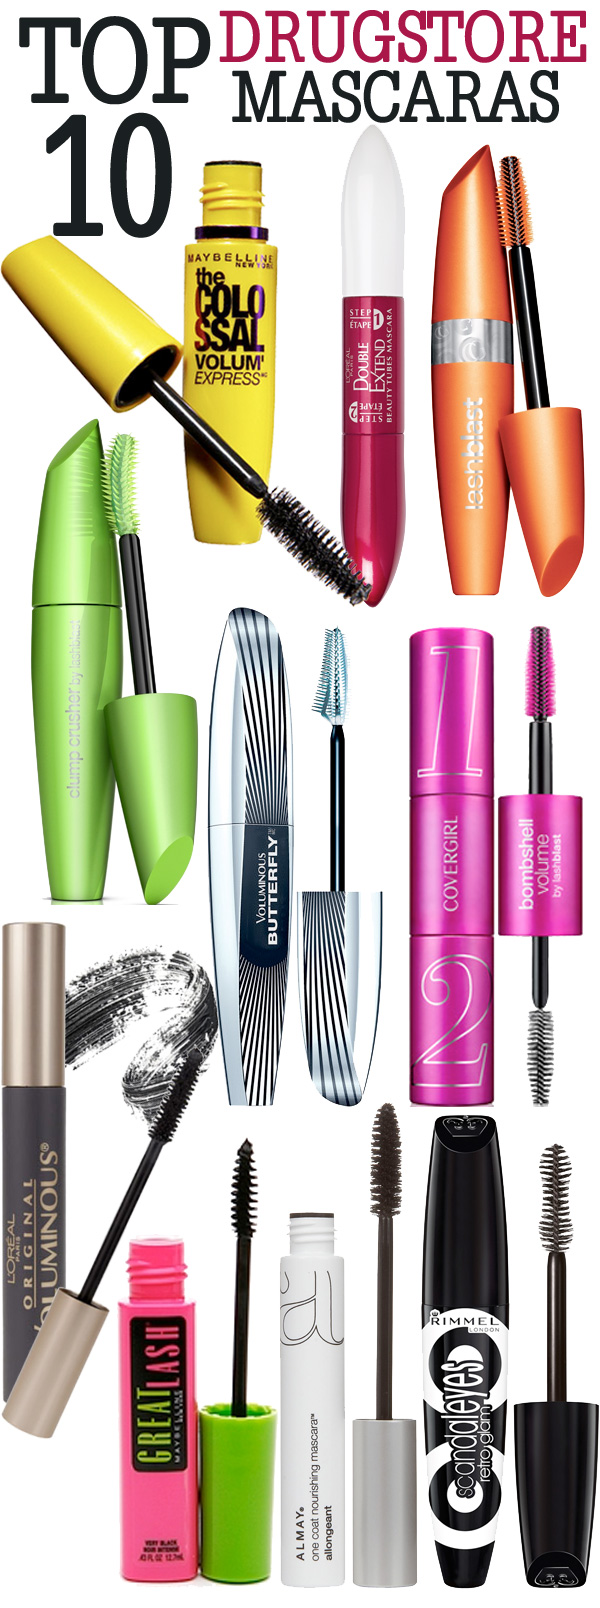 Top Drugstore Mascaras. — Beautiful Makeup